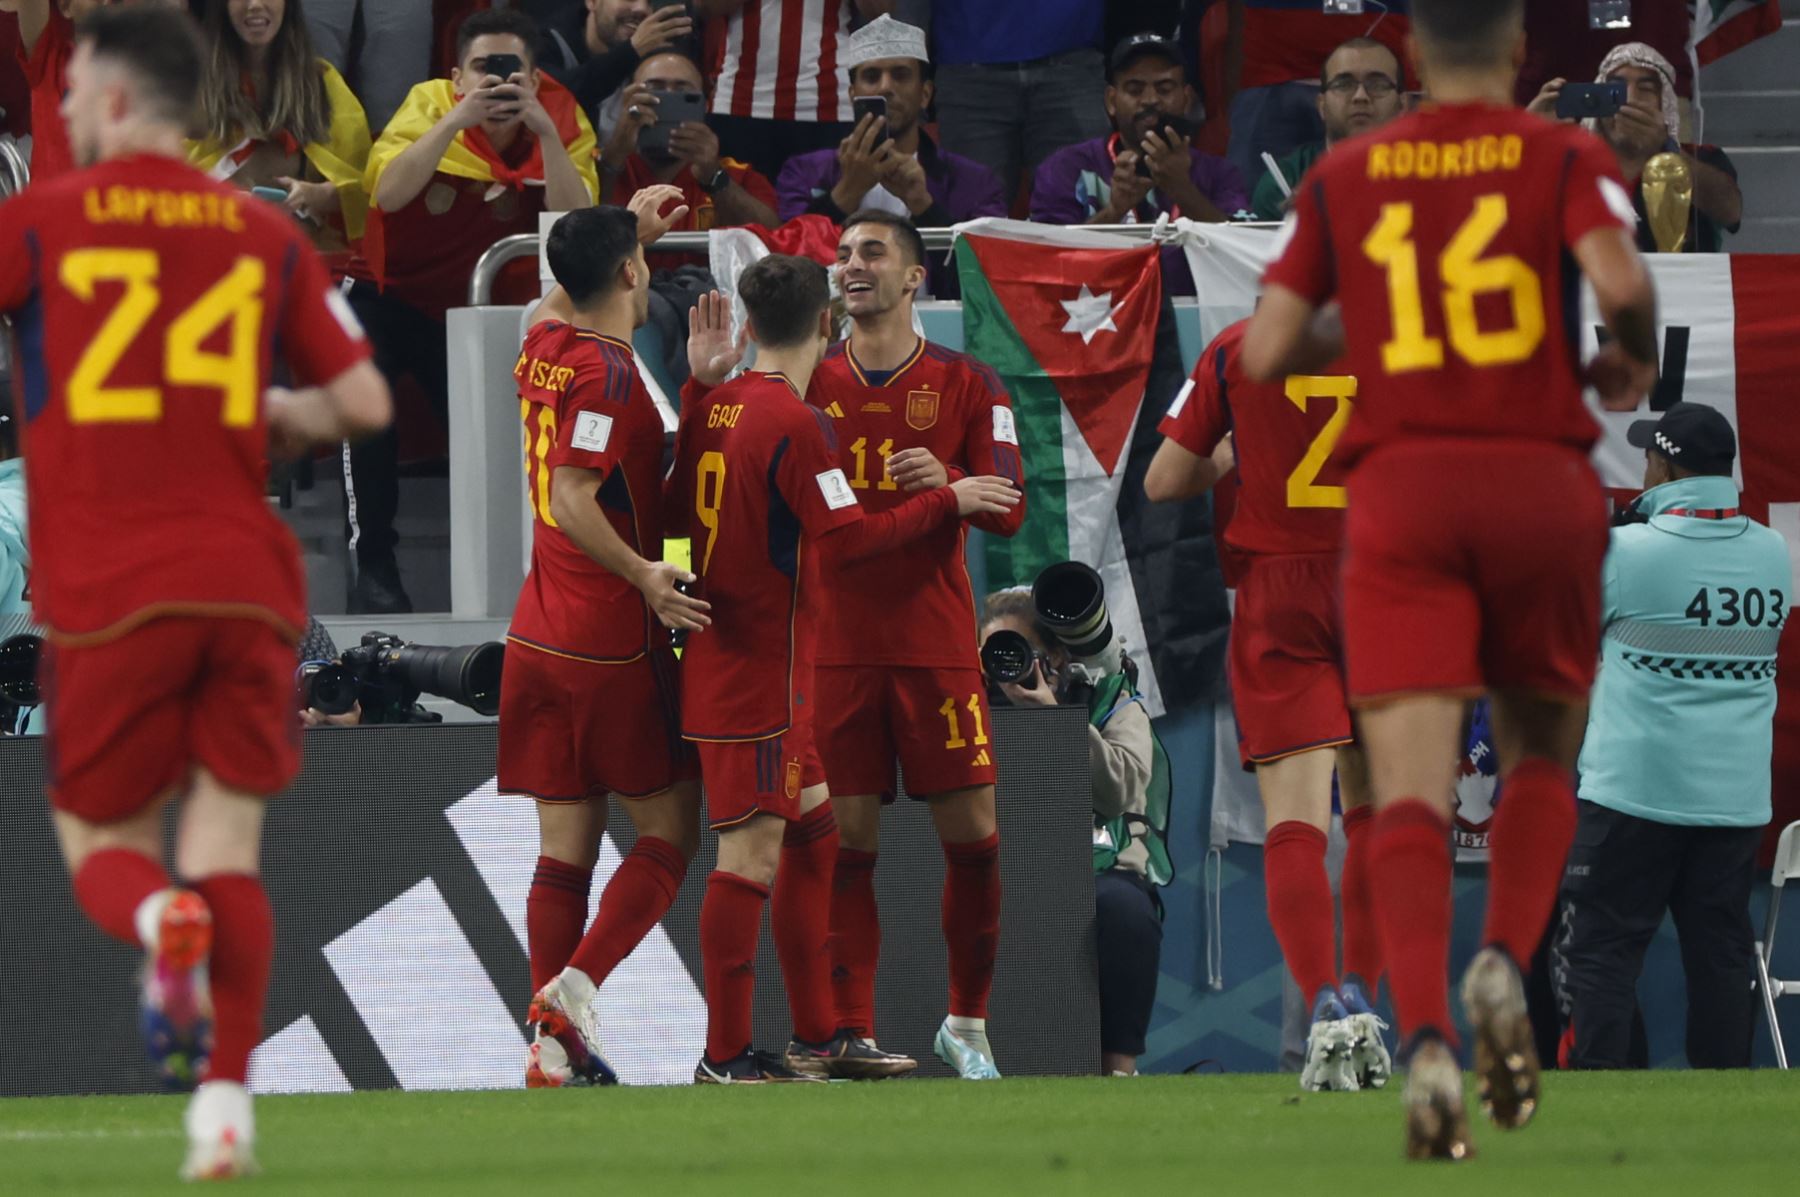 Jugadores de España celebran un gol, en un partido de la fase de grupos del Mundial de Fútbol Catar 2022 entre España y Costa Rica en Doha. Foto: EFE